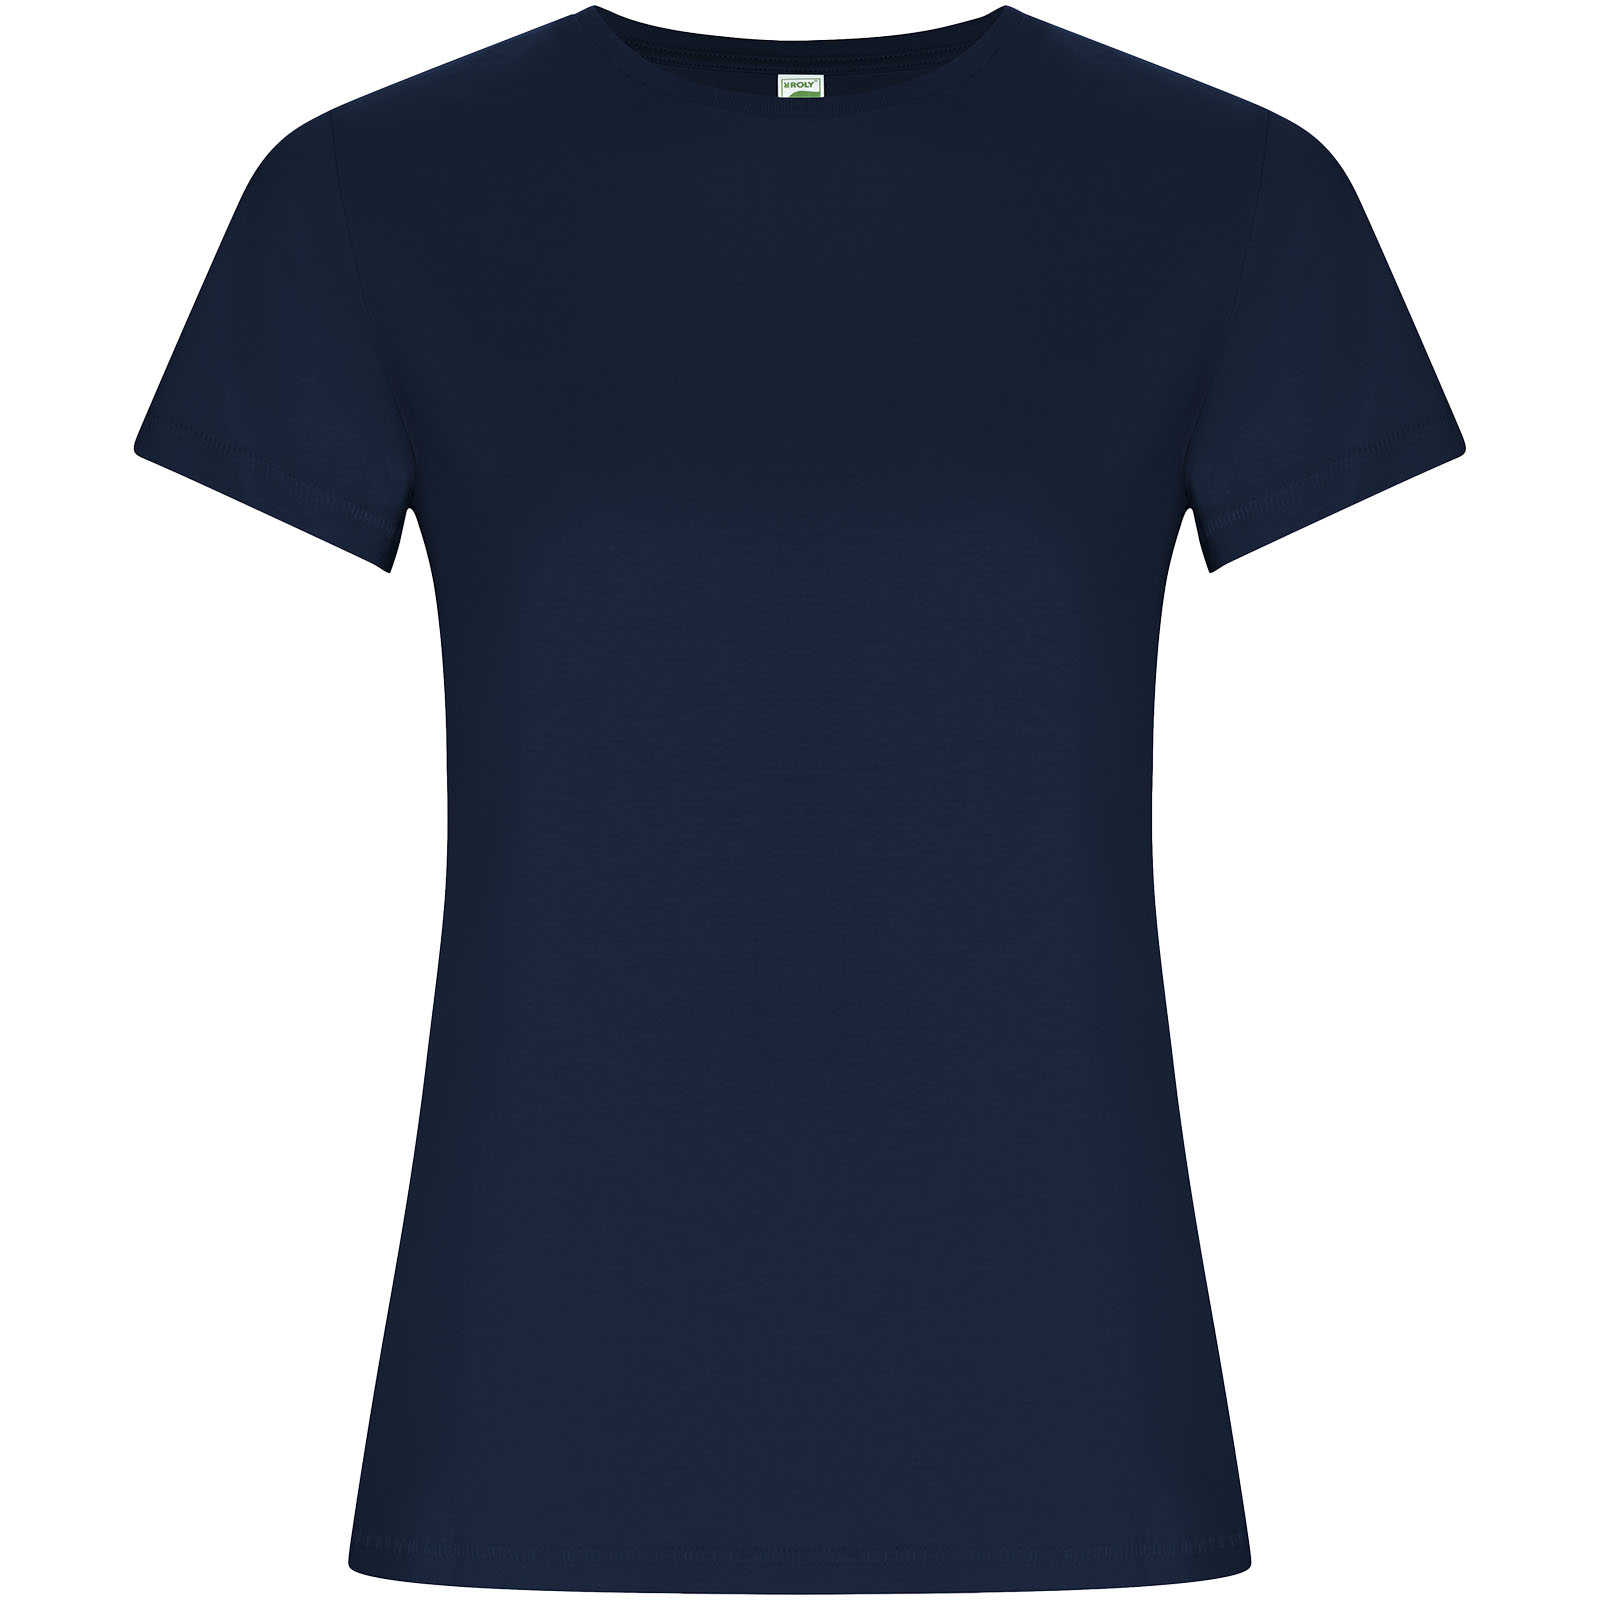 Advertising T-shirts - Golden short sleeve women's t-shirt - 0